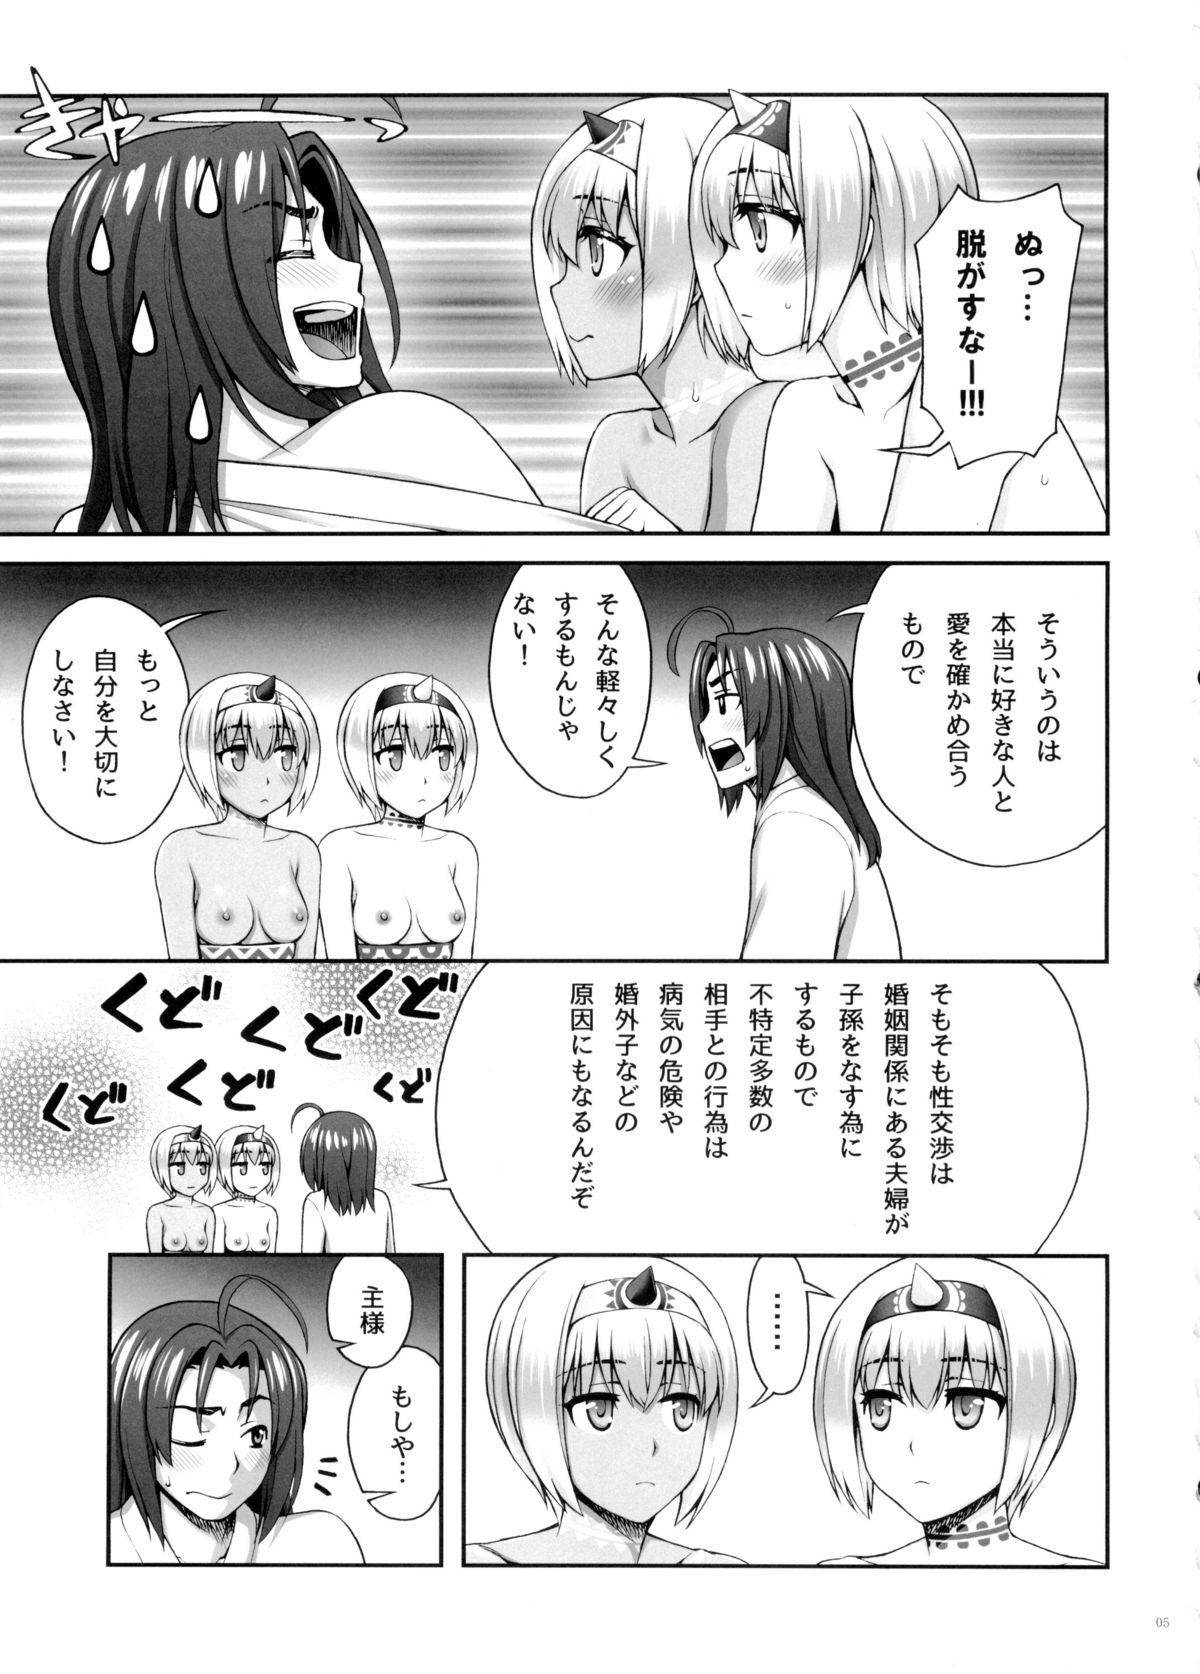 Huge Boobs Yotogi Banashi - Utawarerumono itsuwari no kamen Storyline - Page 4